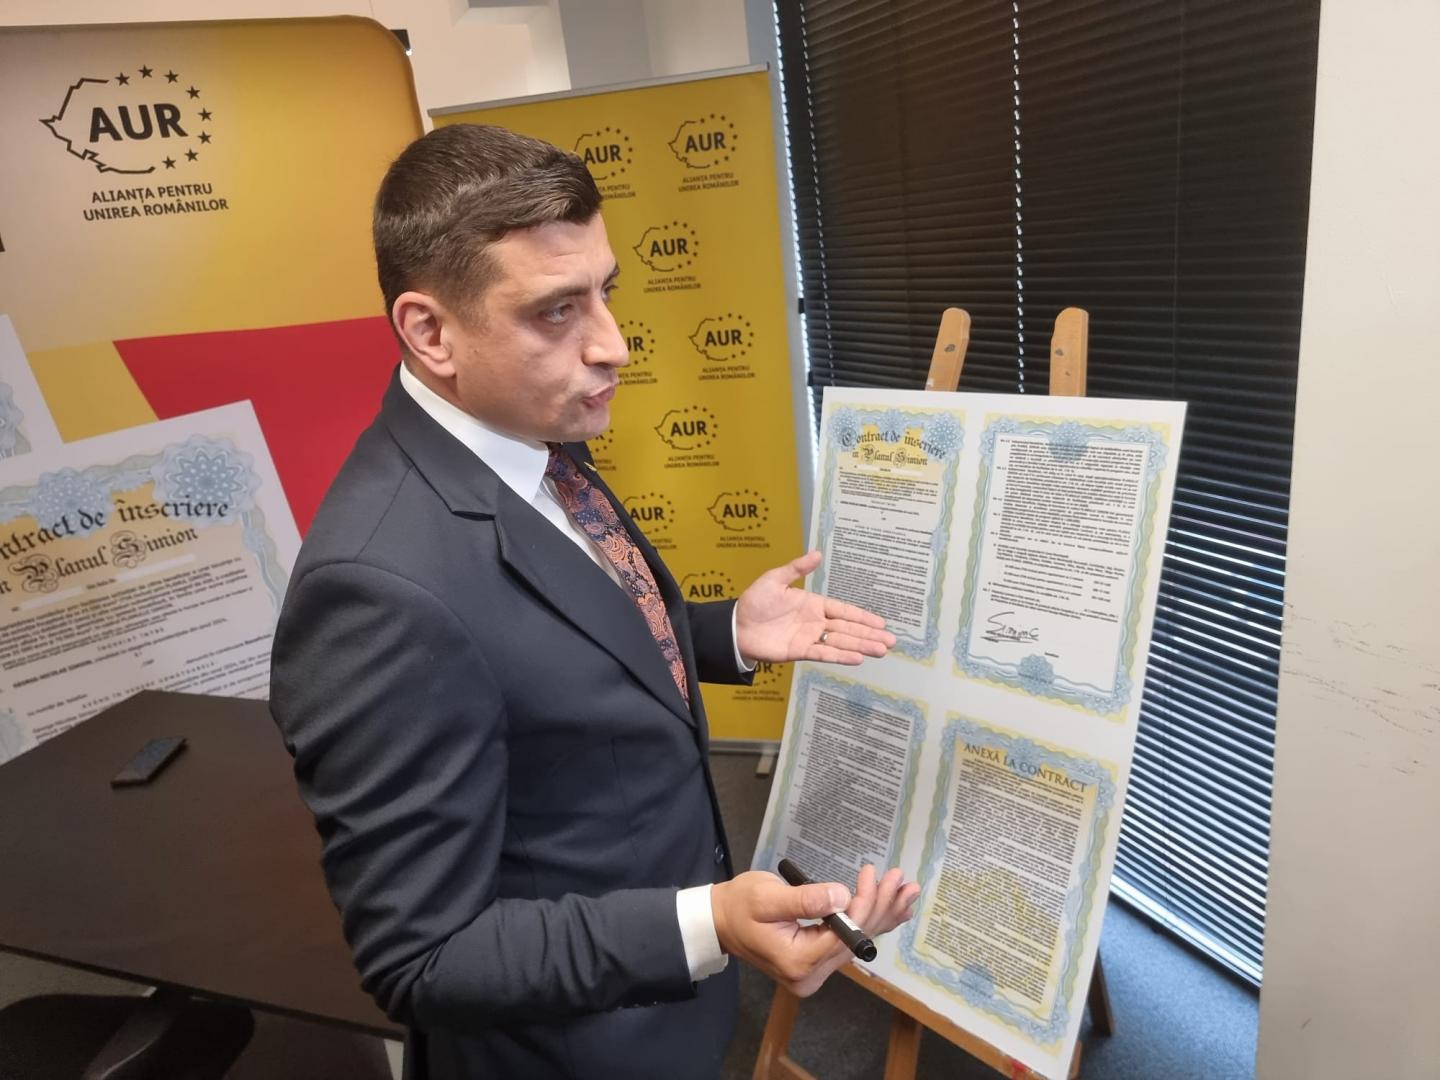 Clujenii s-au îmbulzit să semneze pentru locuințele de 35.000 euro promise de George Simion